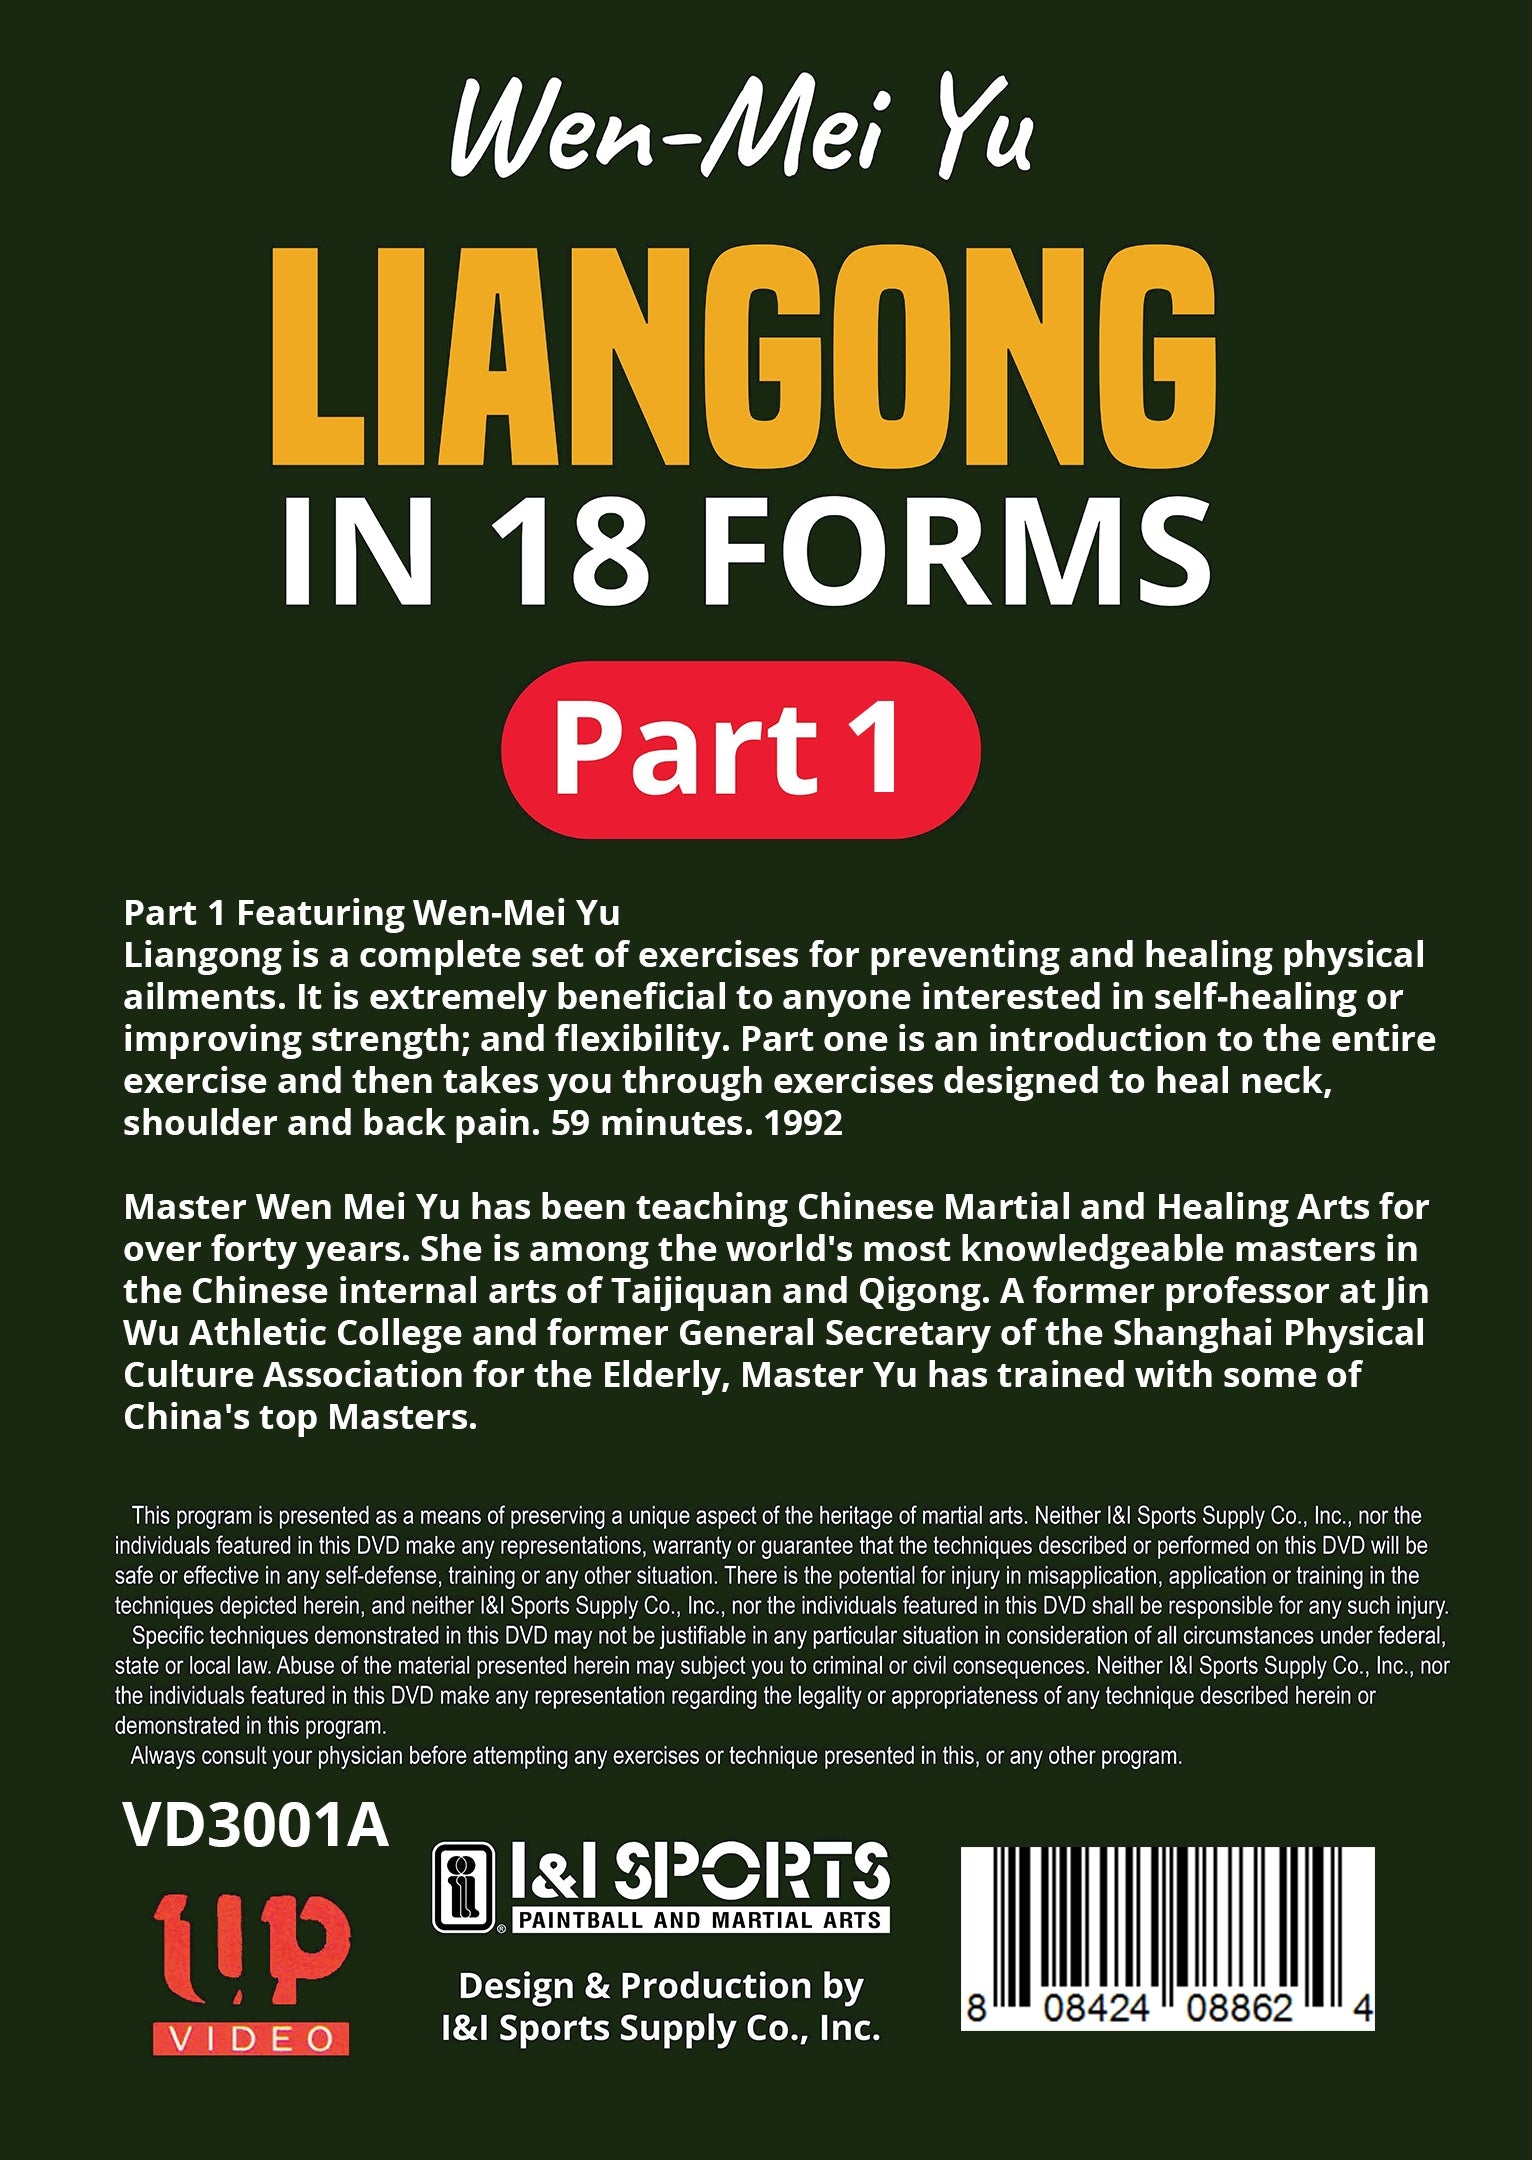 Liangong in 18 Forms #1 DVD Wen-Mei Yu